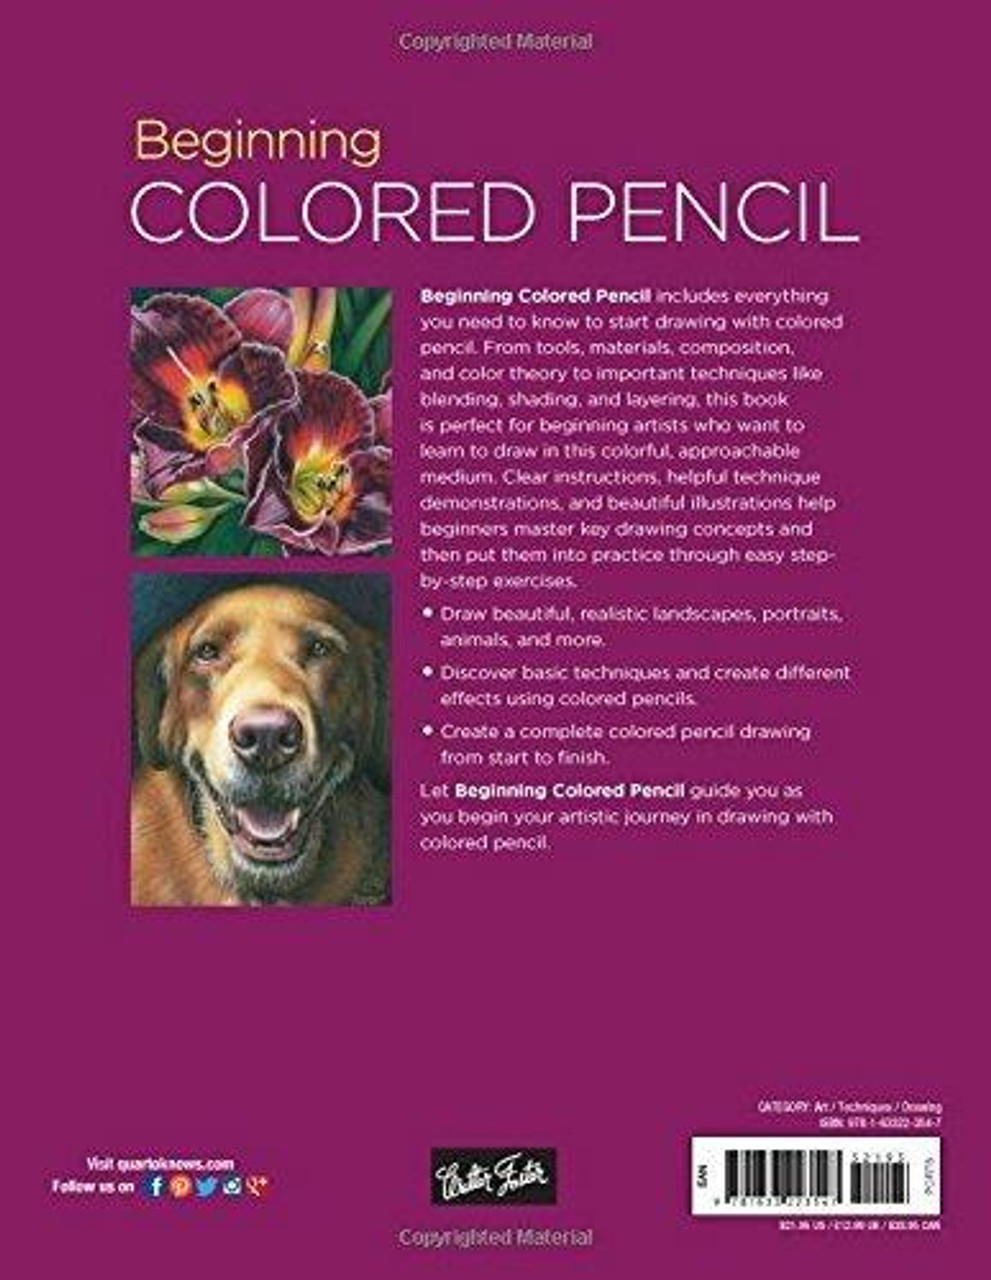 Color Pencil Portraits - Materials and Techniques